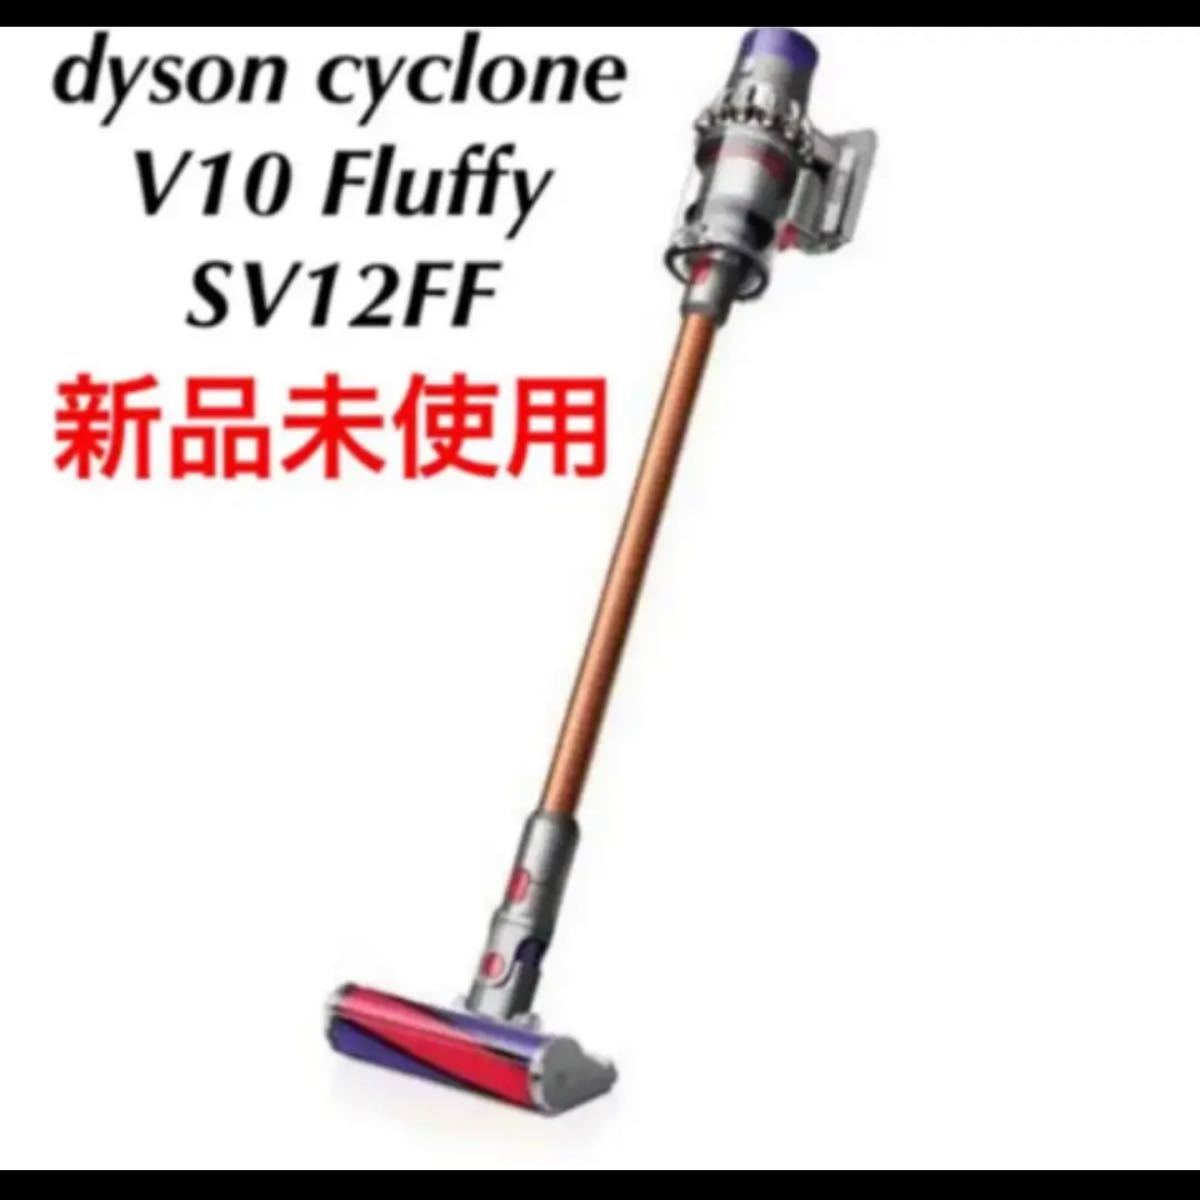 dyson cyclone V10 Fluffy SV12FF ダイソン - fundacionatenea.org